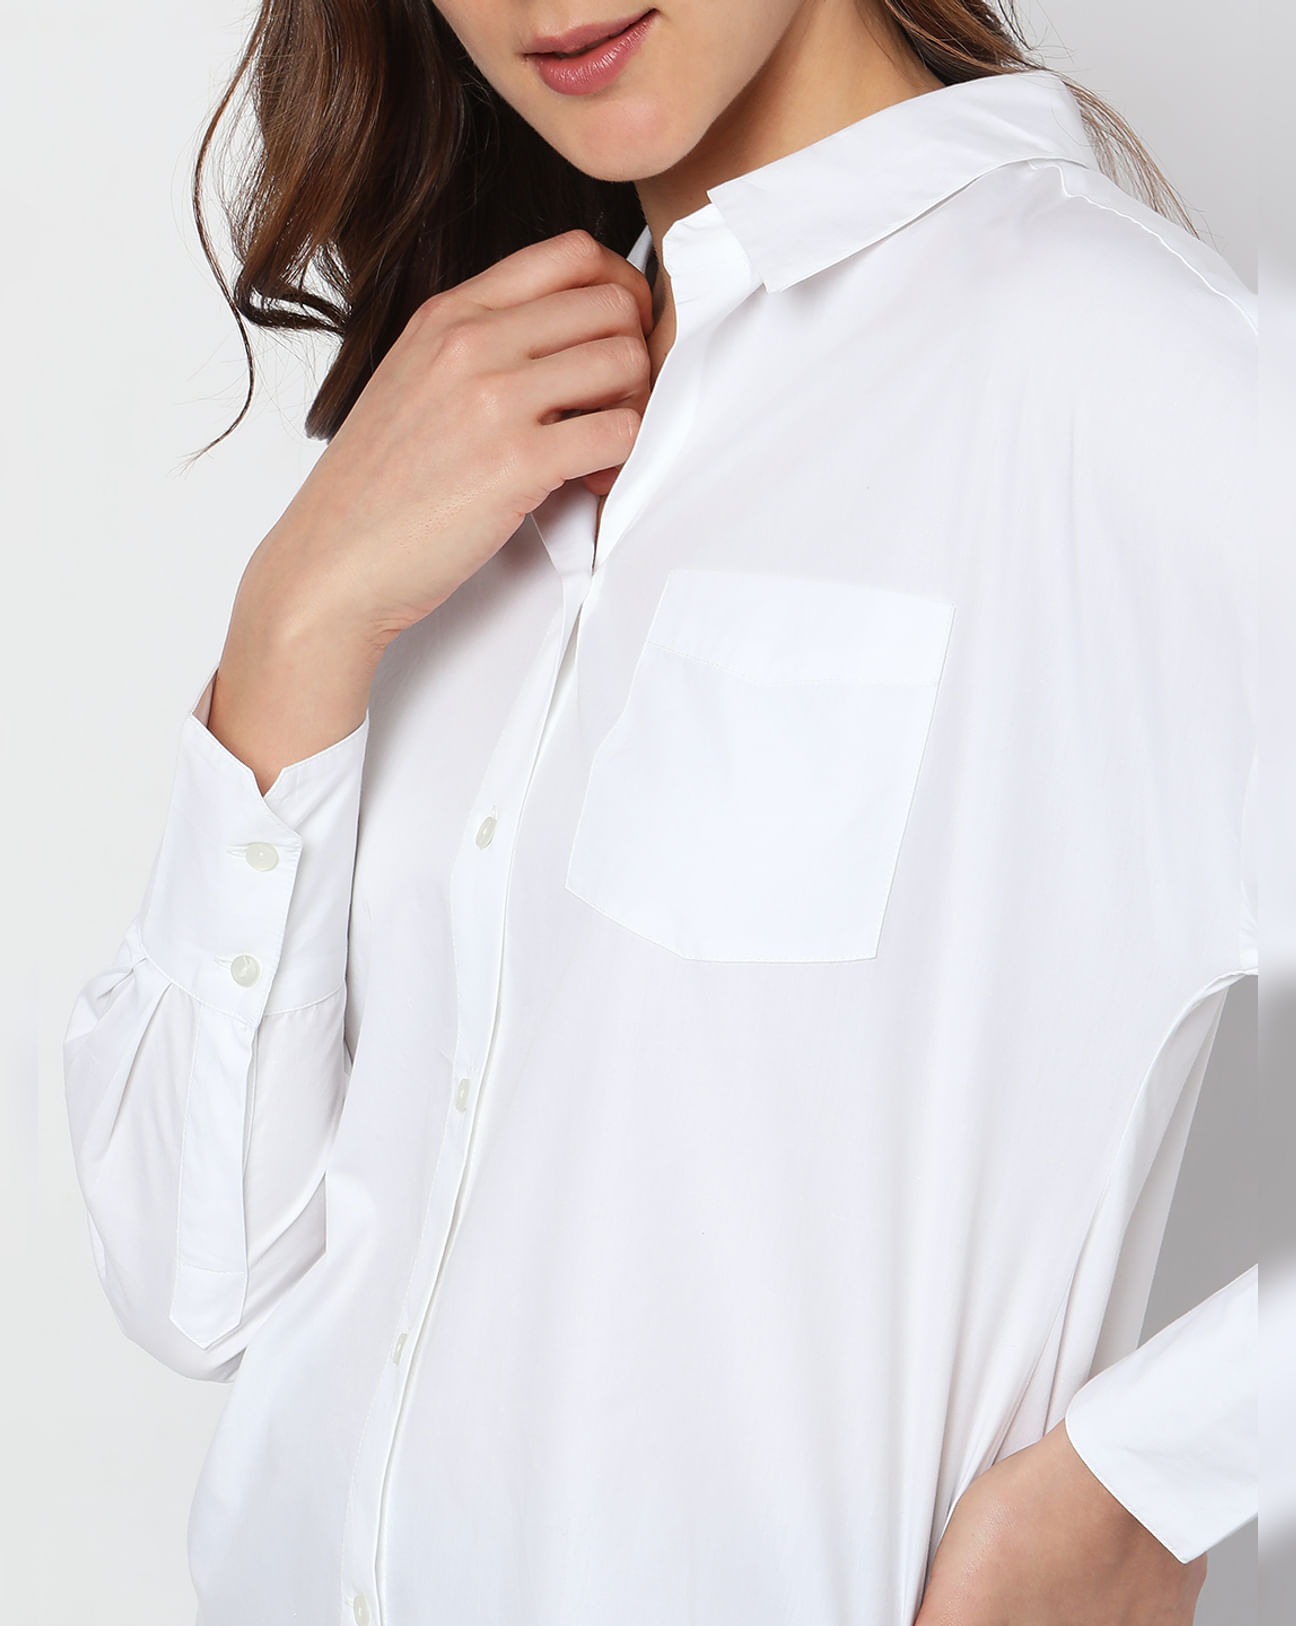 Buy White Formal Shirt For Women Online in India | VeroModa